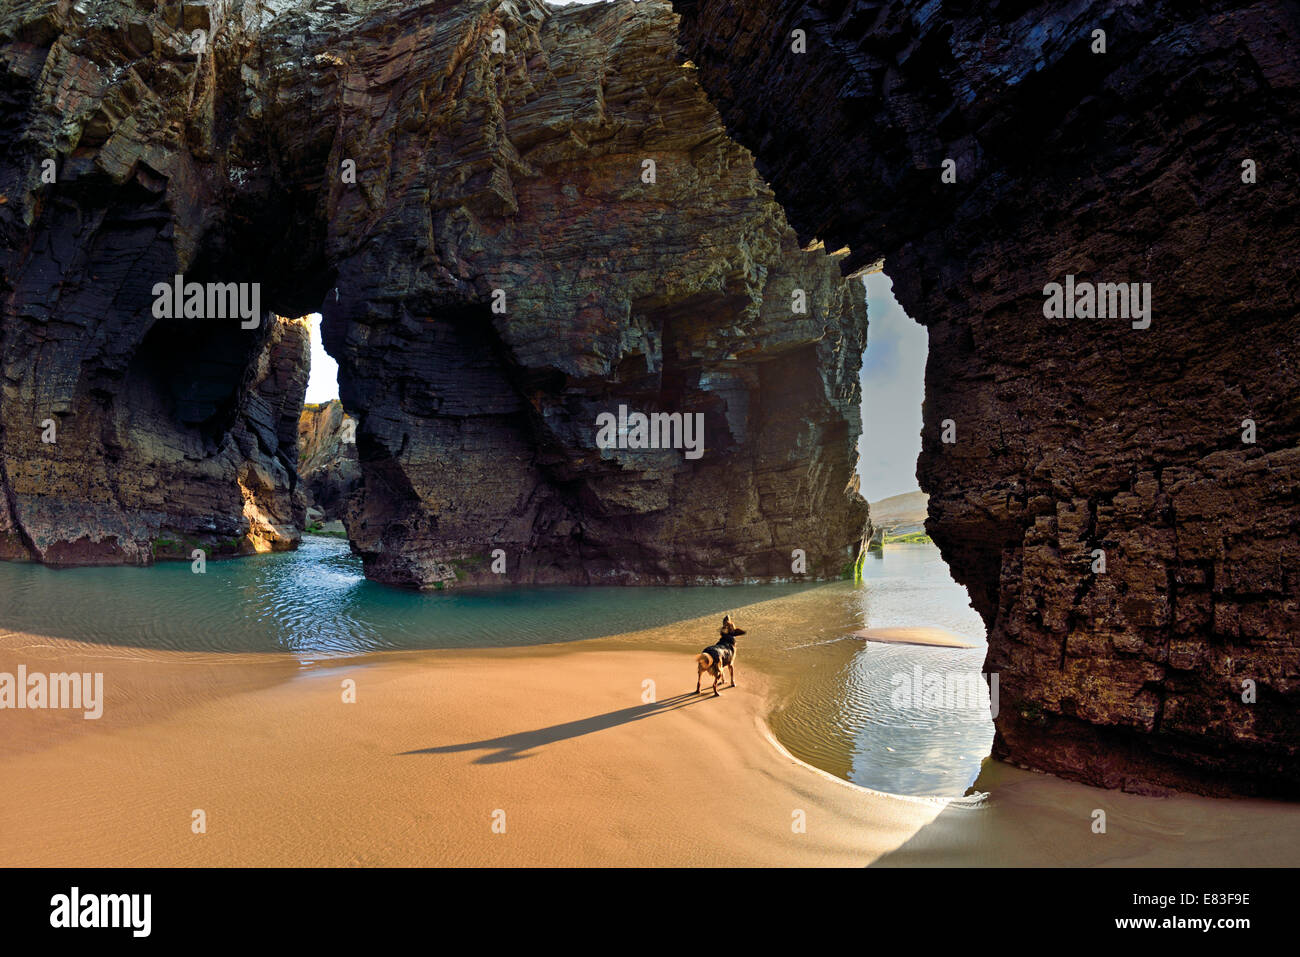 Spagna Galizia: piccolo cane in una grotta cercando di roccia archi a cattedrale beach Foto Stock